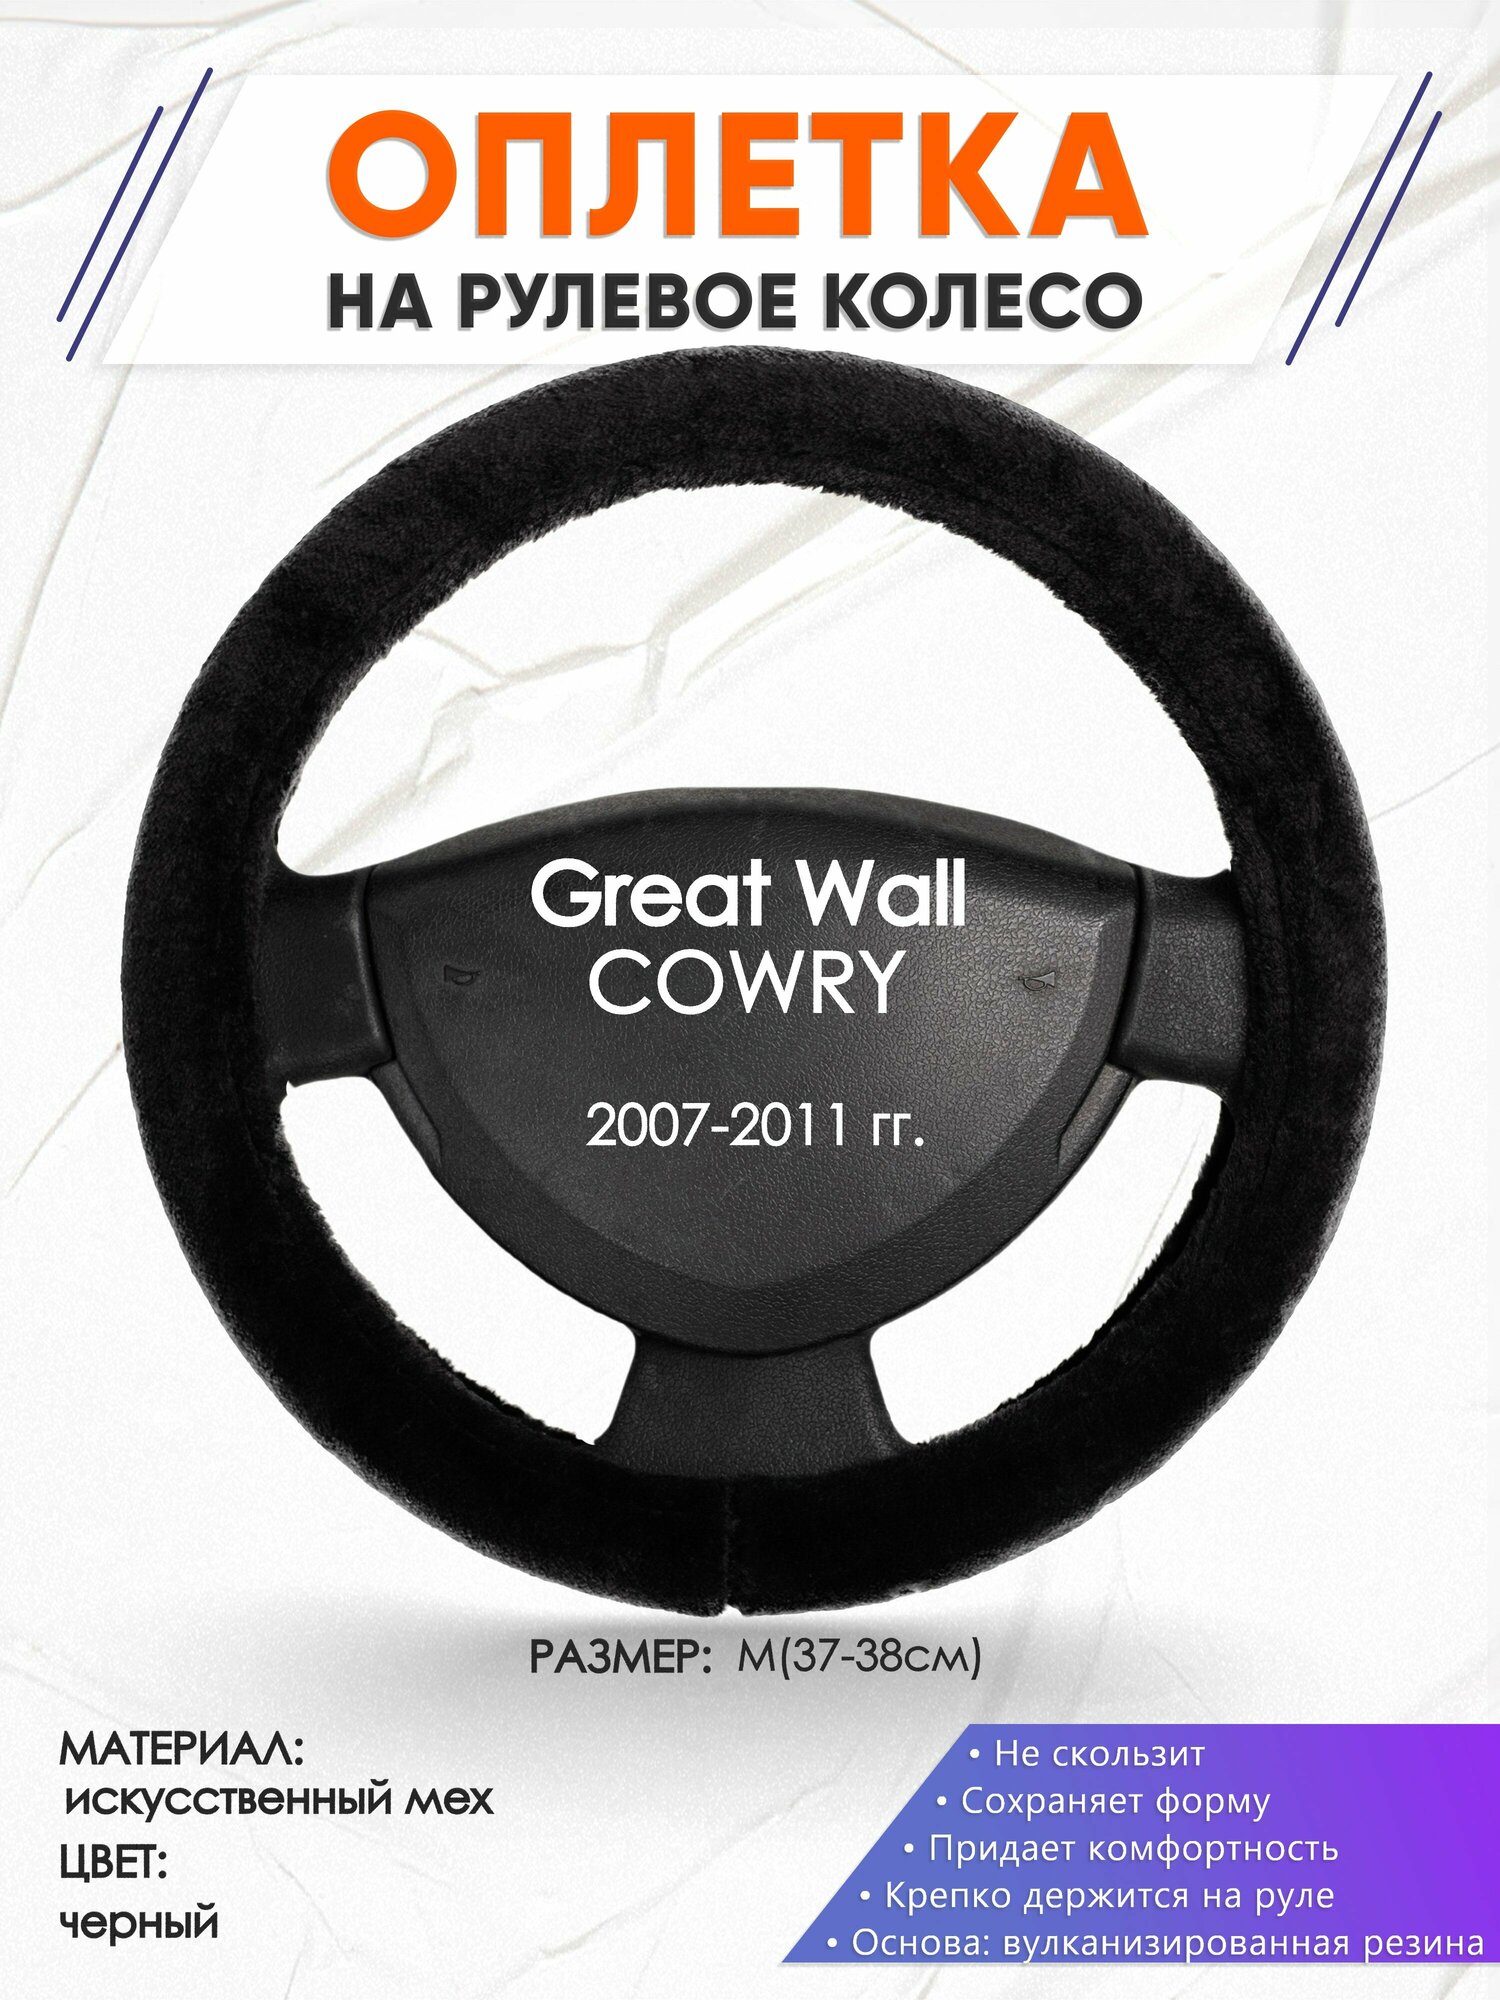 Оплетка наруль для Great Wall COWRY(Грейт Вол Коври) 2007-2011 годов выпуска размер M(37-38см) Искусственный мех 47